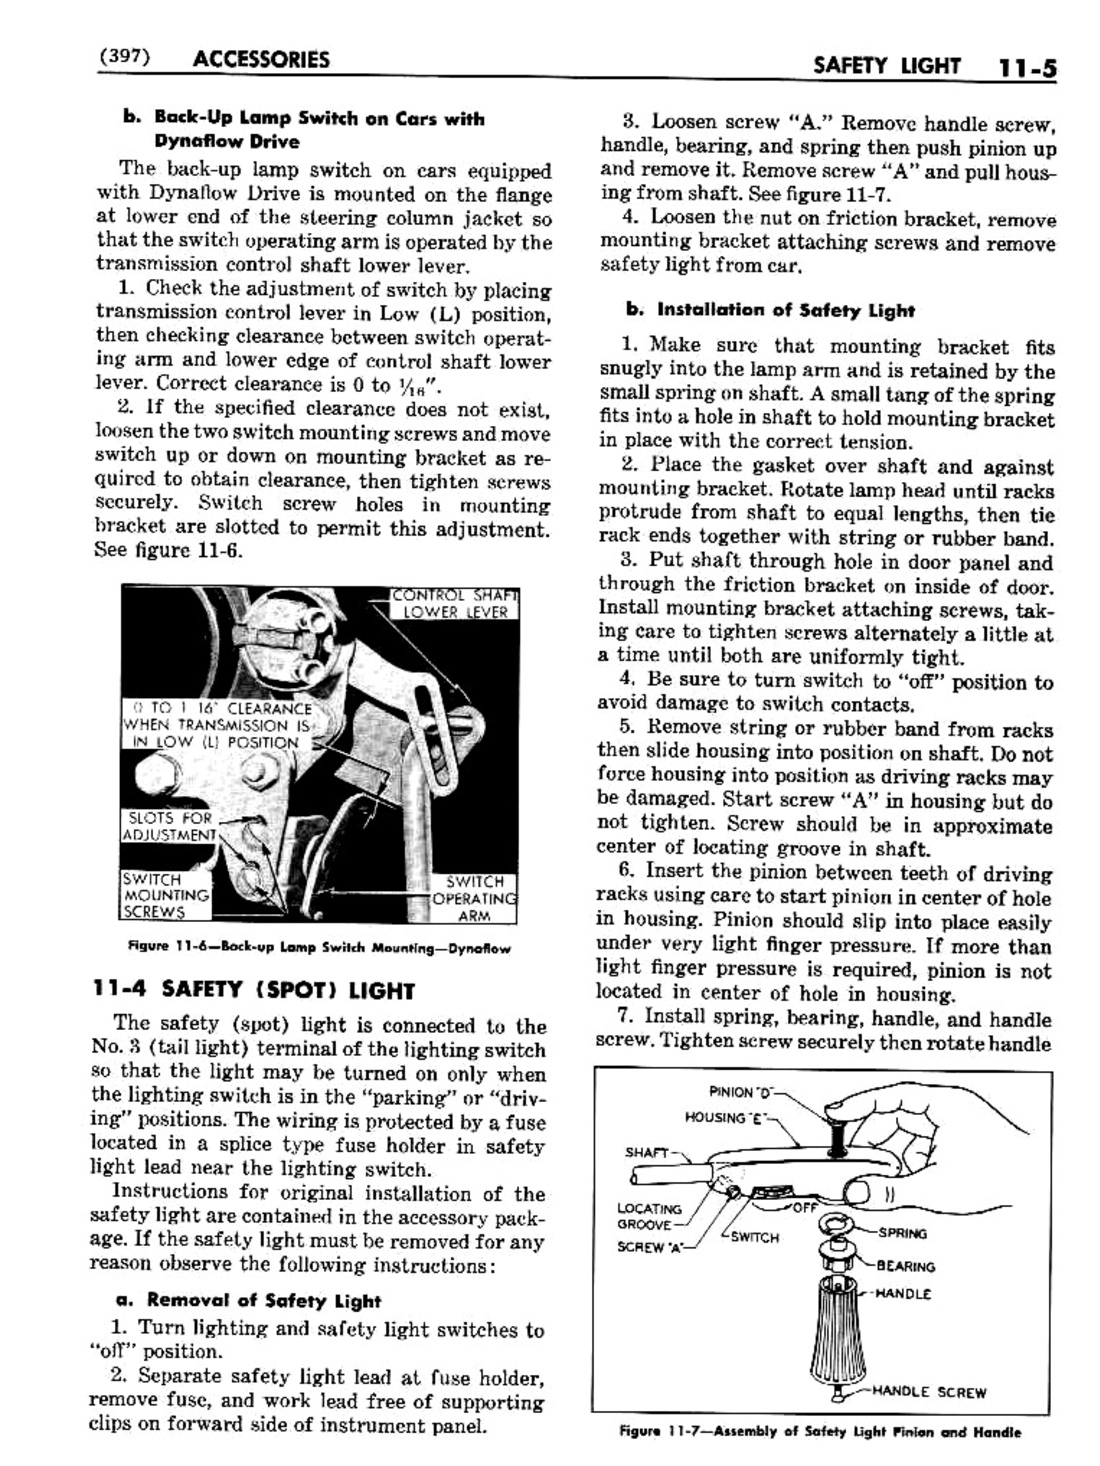 n_12 1951 Buick Shop Manual - Accessories-005-005.jpg